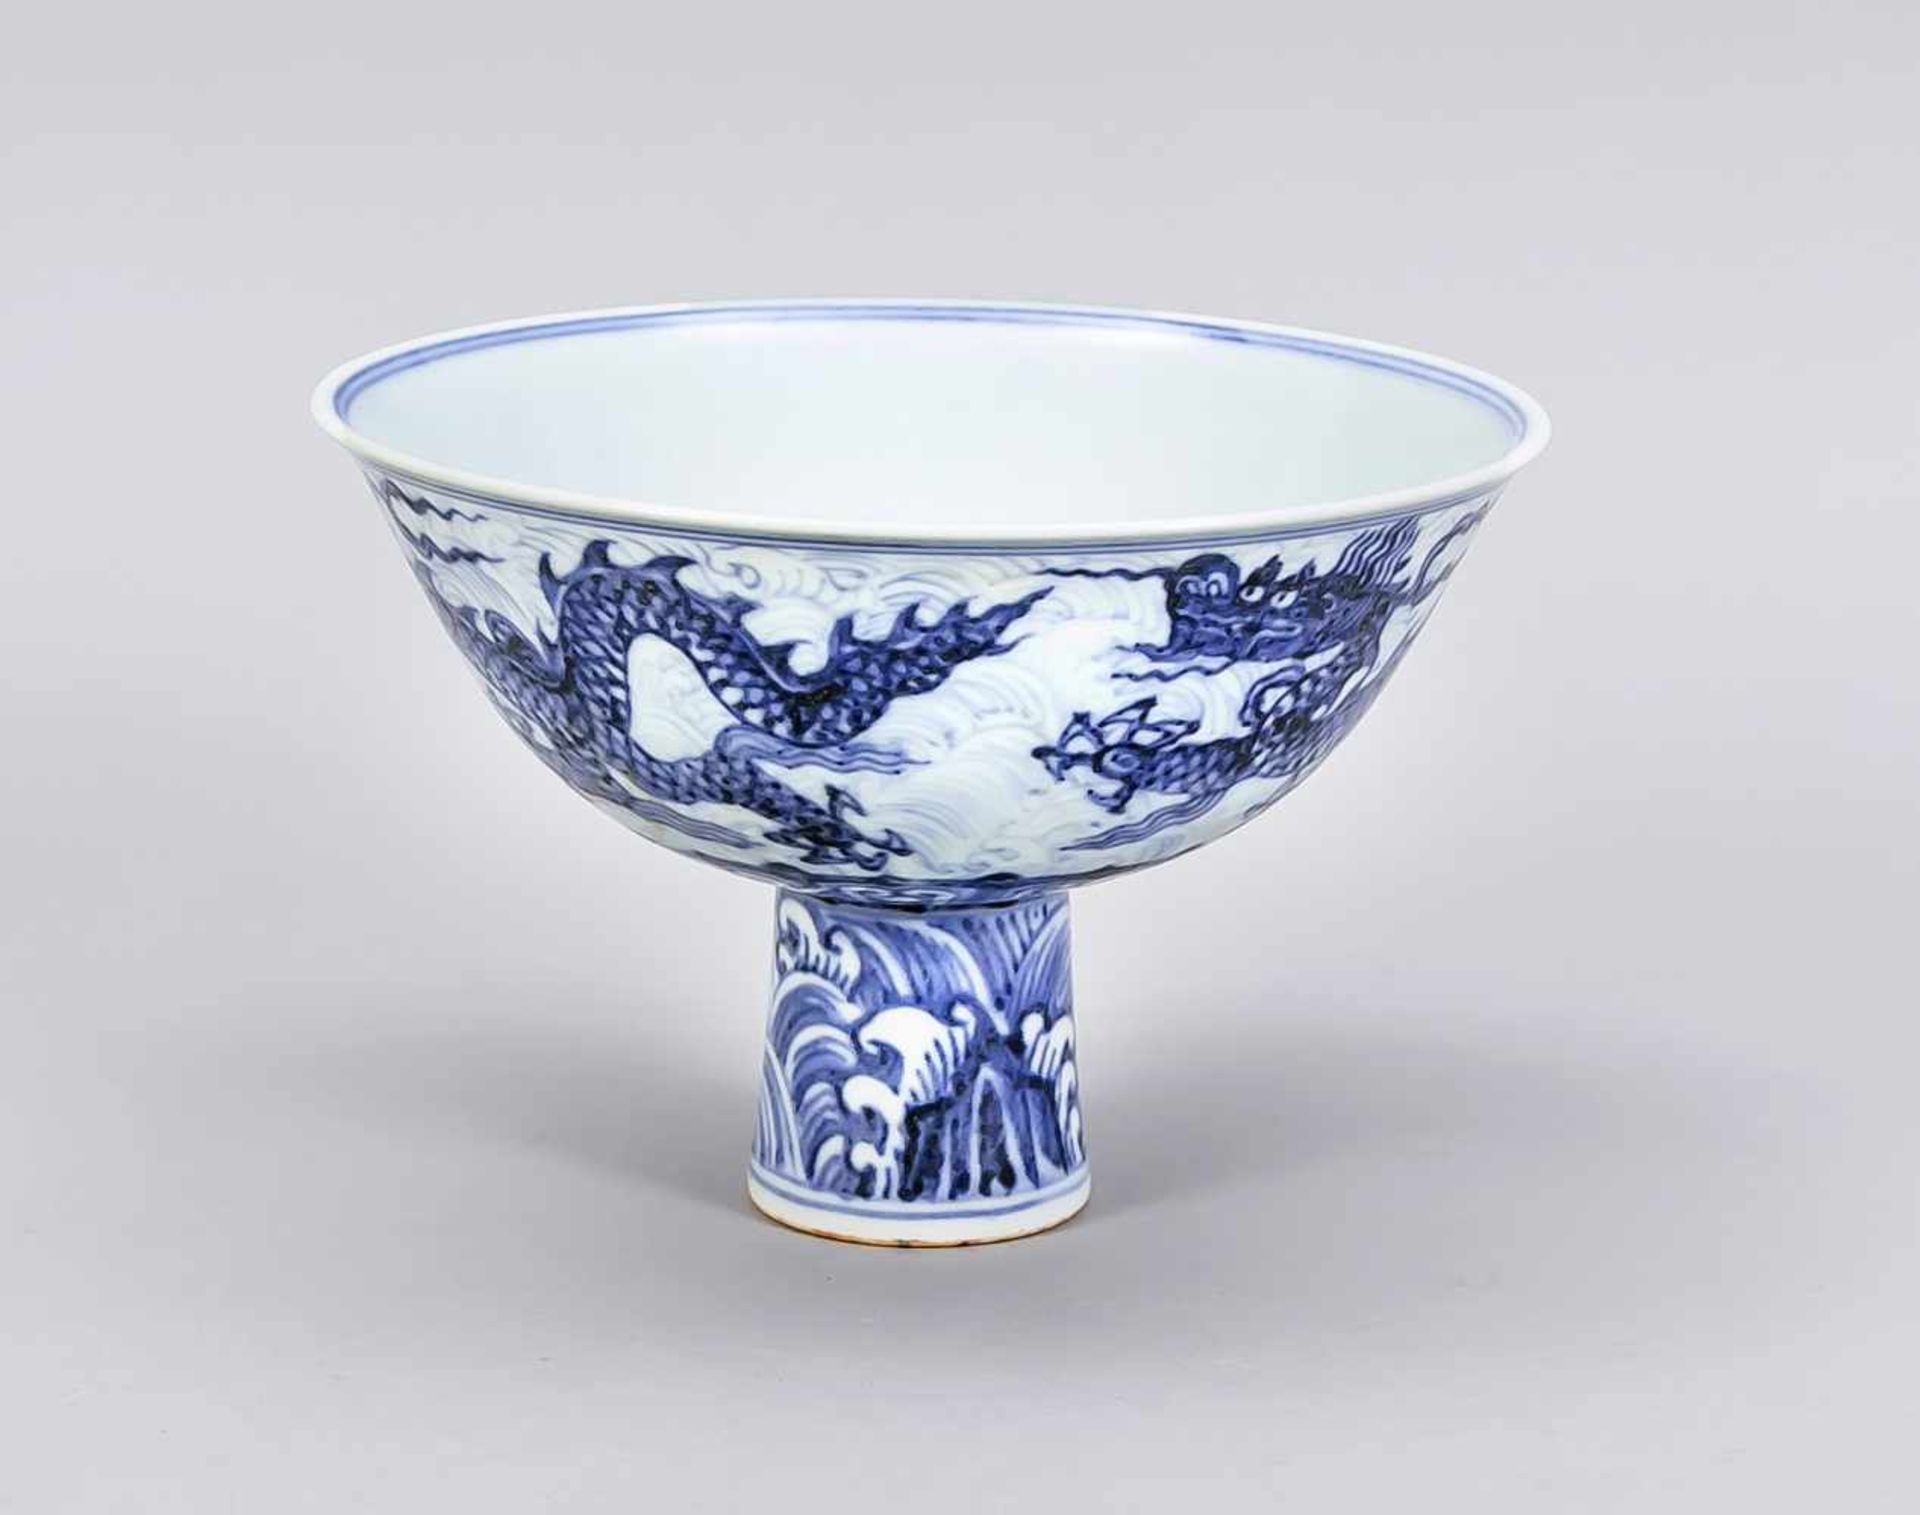 Drachen-Fußschale, China, 19. Jh.? Dekor in Kobaltblau, im Spiegel mit einem Drachen vorstilisierten